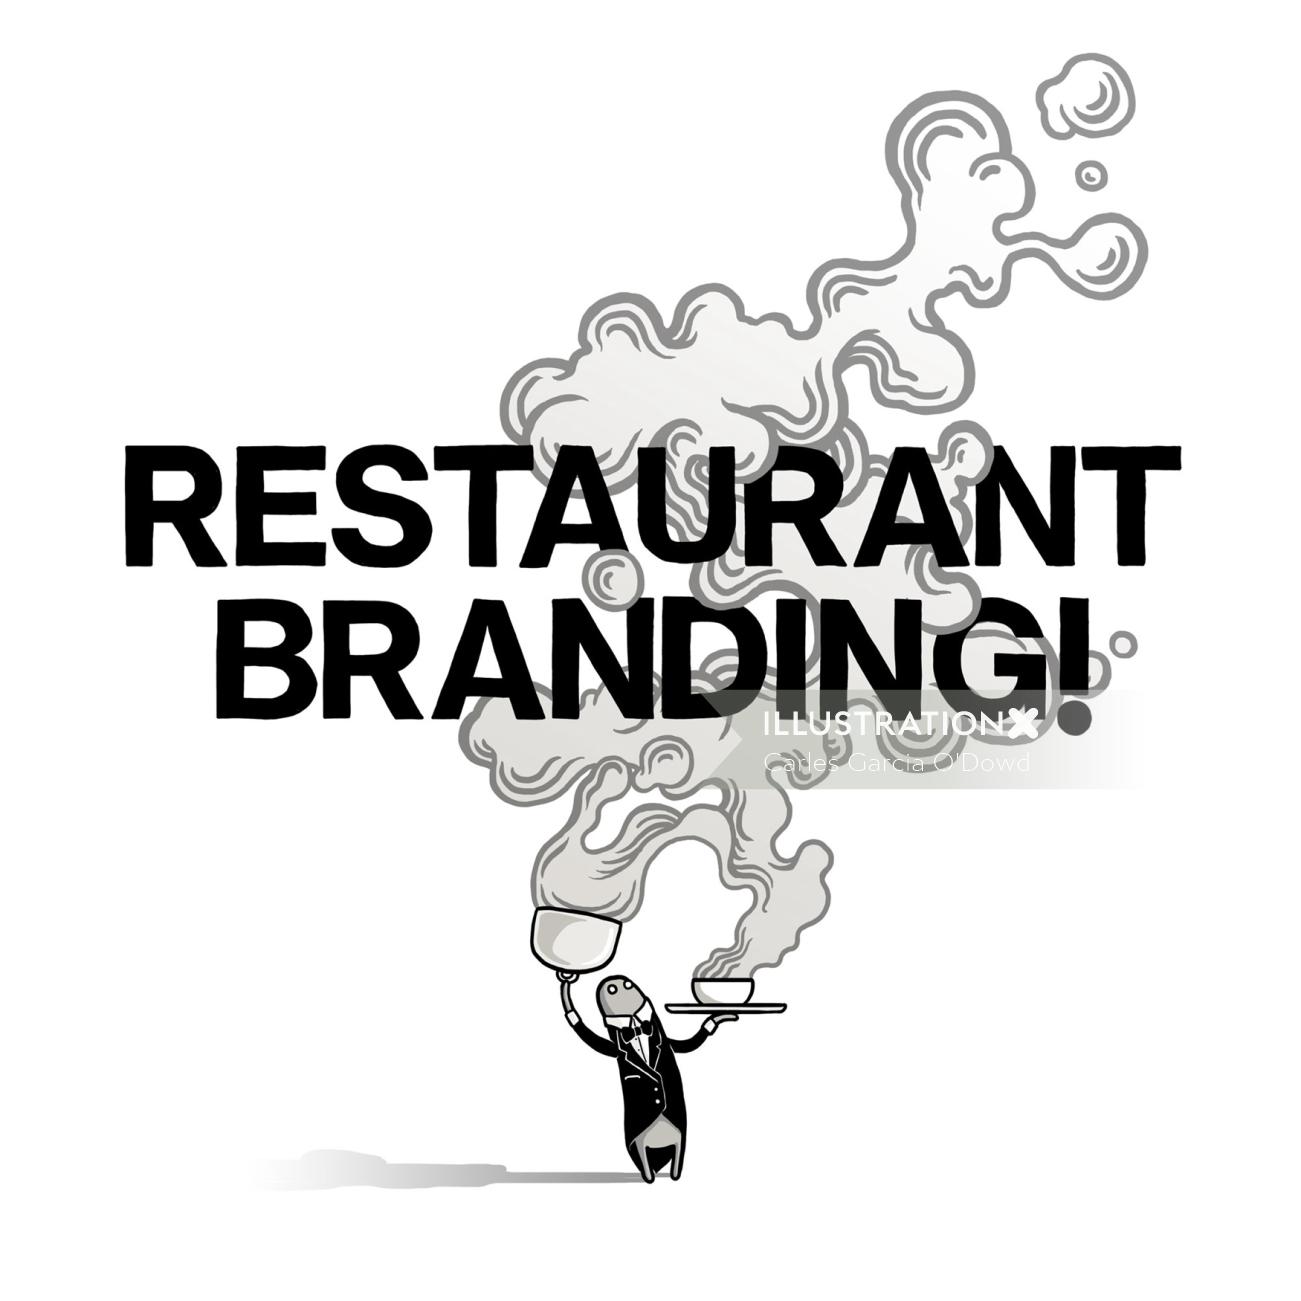 Oeuvre de marque de restaurant pour la campagne de médias sociaux